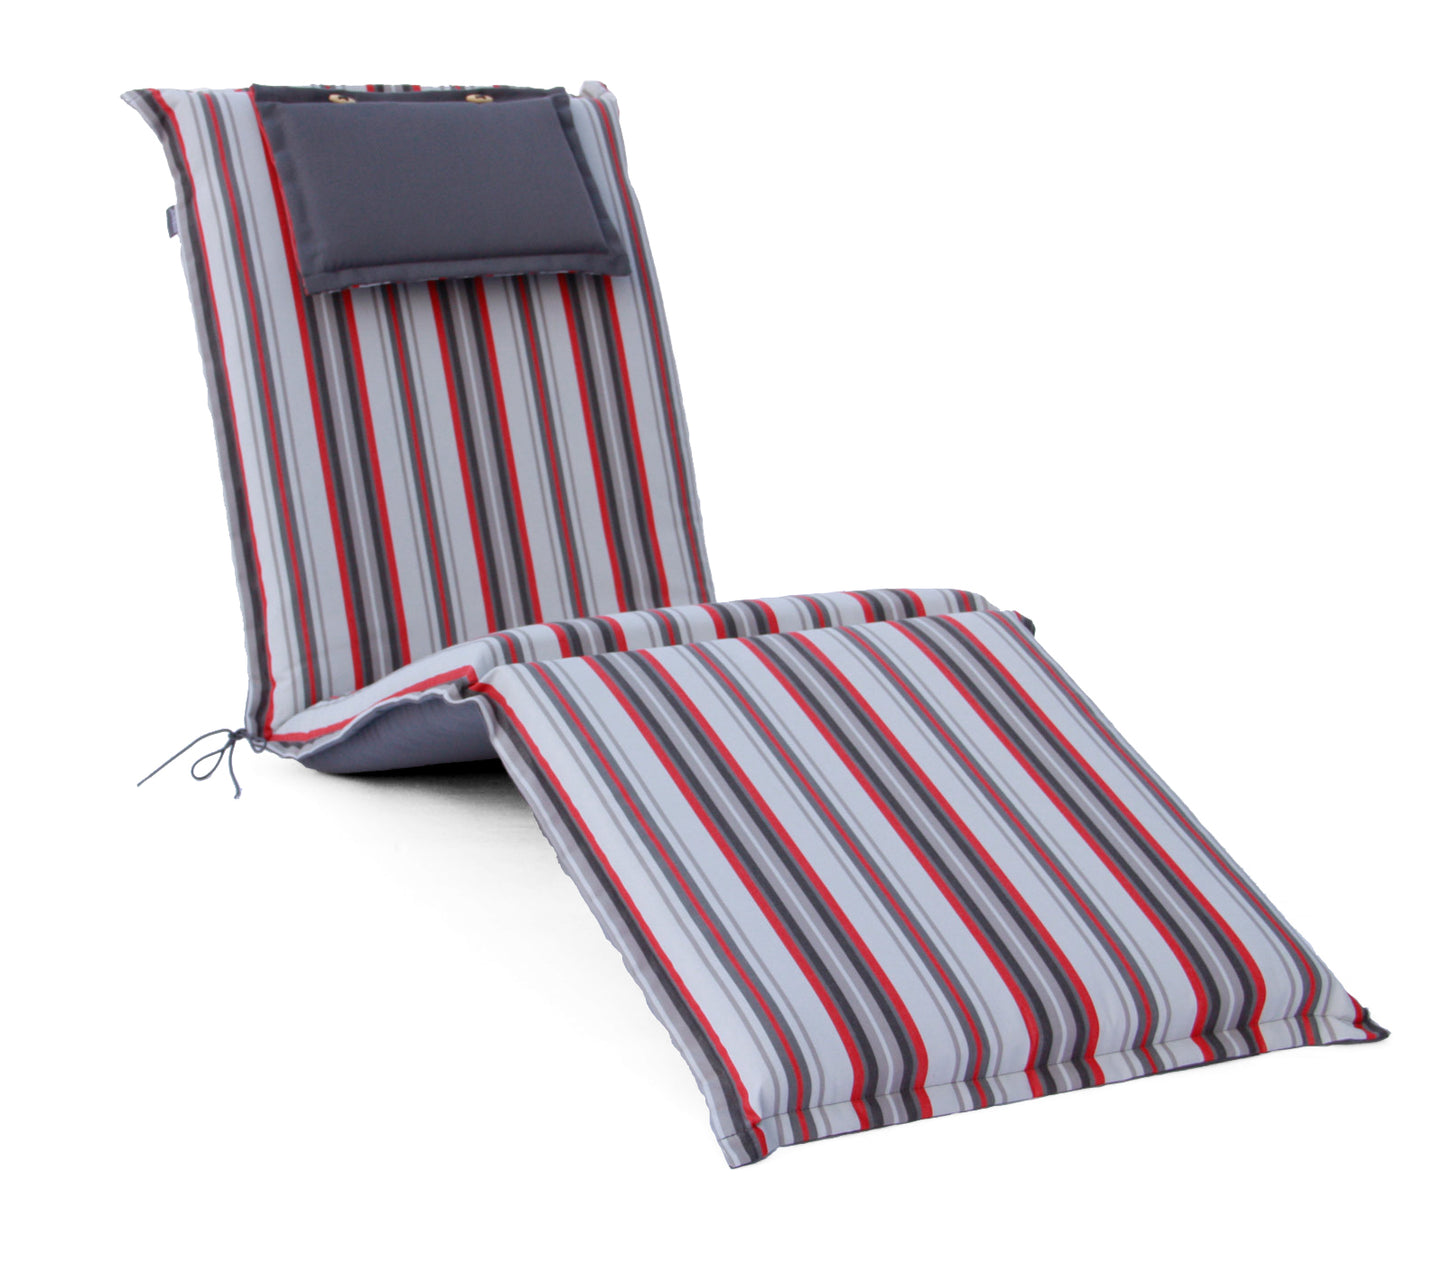 
                  
                    Gartenmöbel Auflage für Deckchair grau-rot gestreift
                  
                